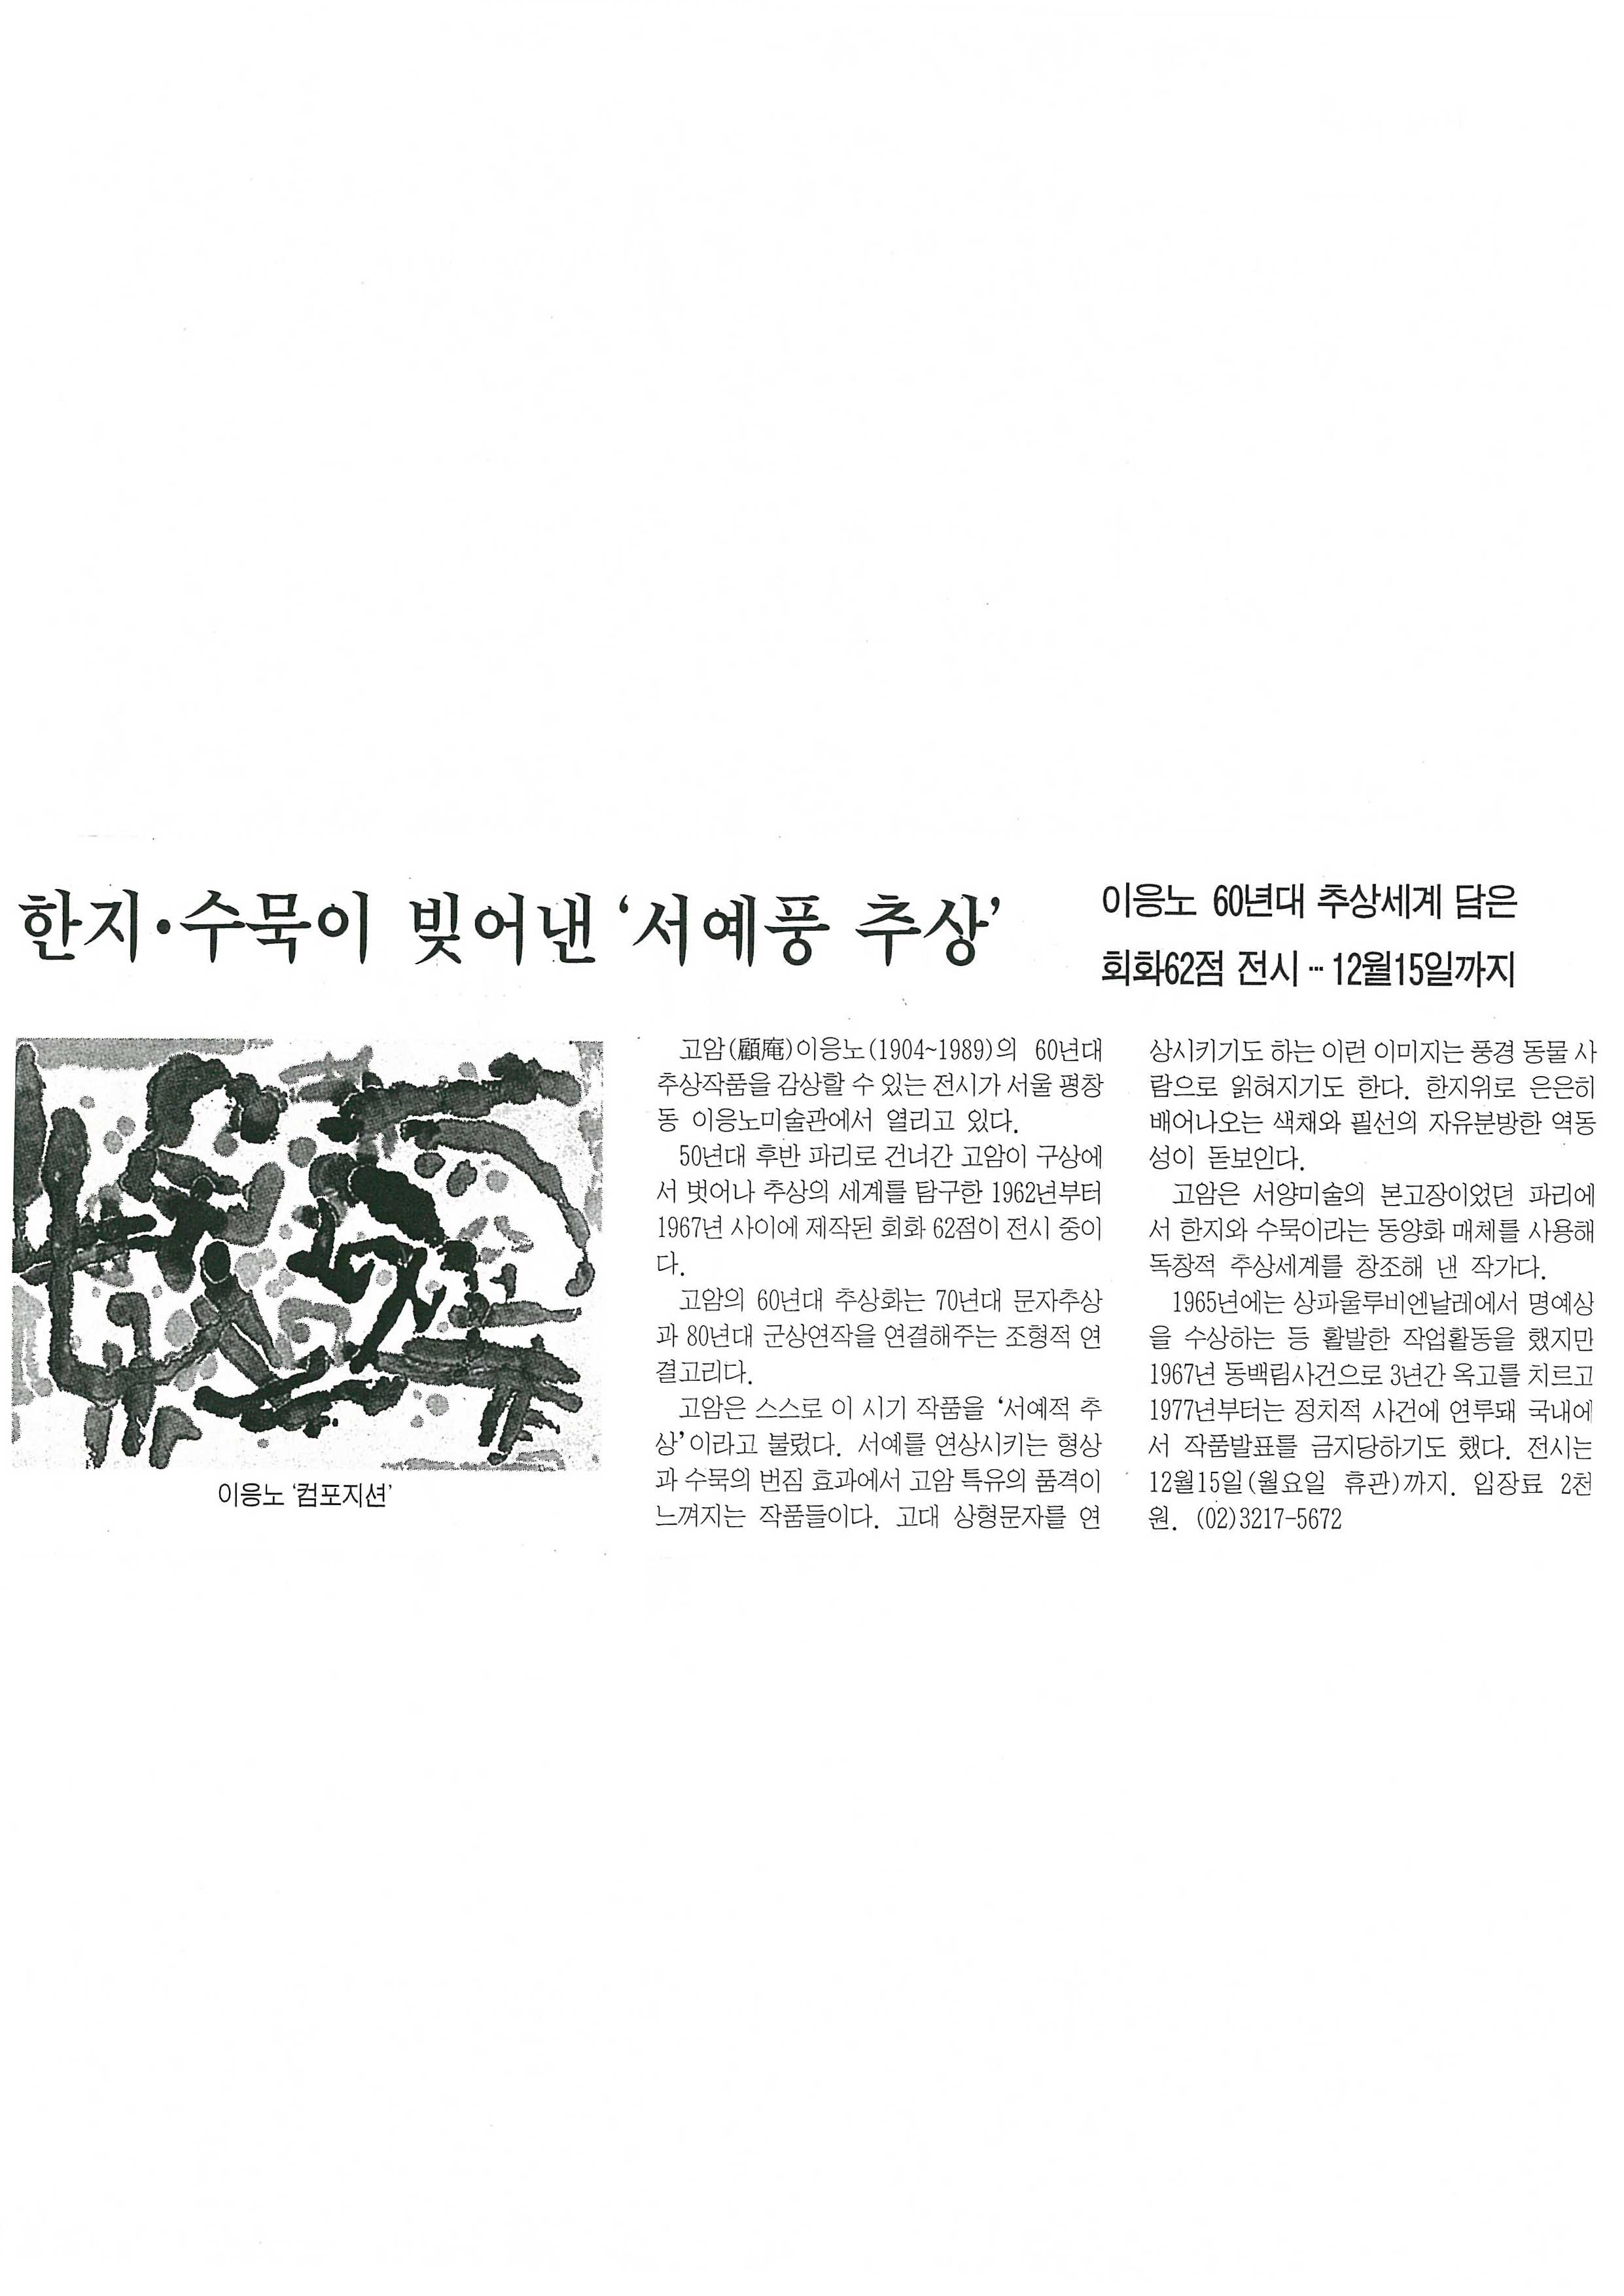  「한지·수묵이 빚어낸 '서예풍 추상'」, 『한국경제』 